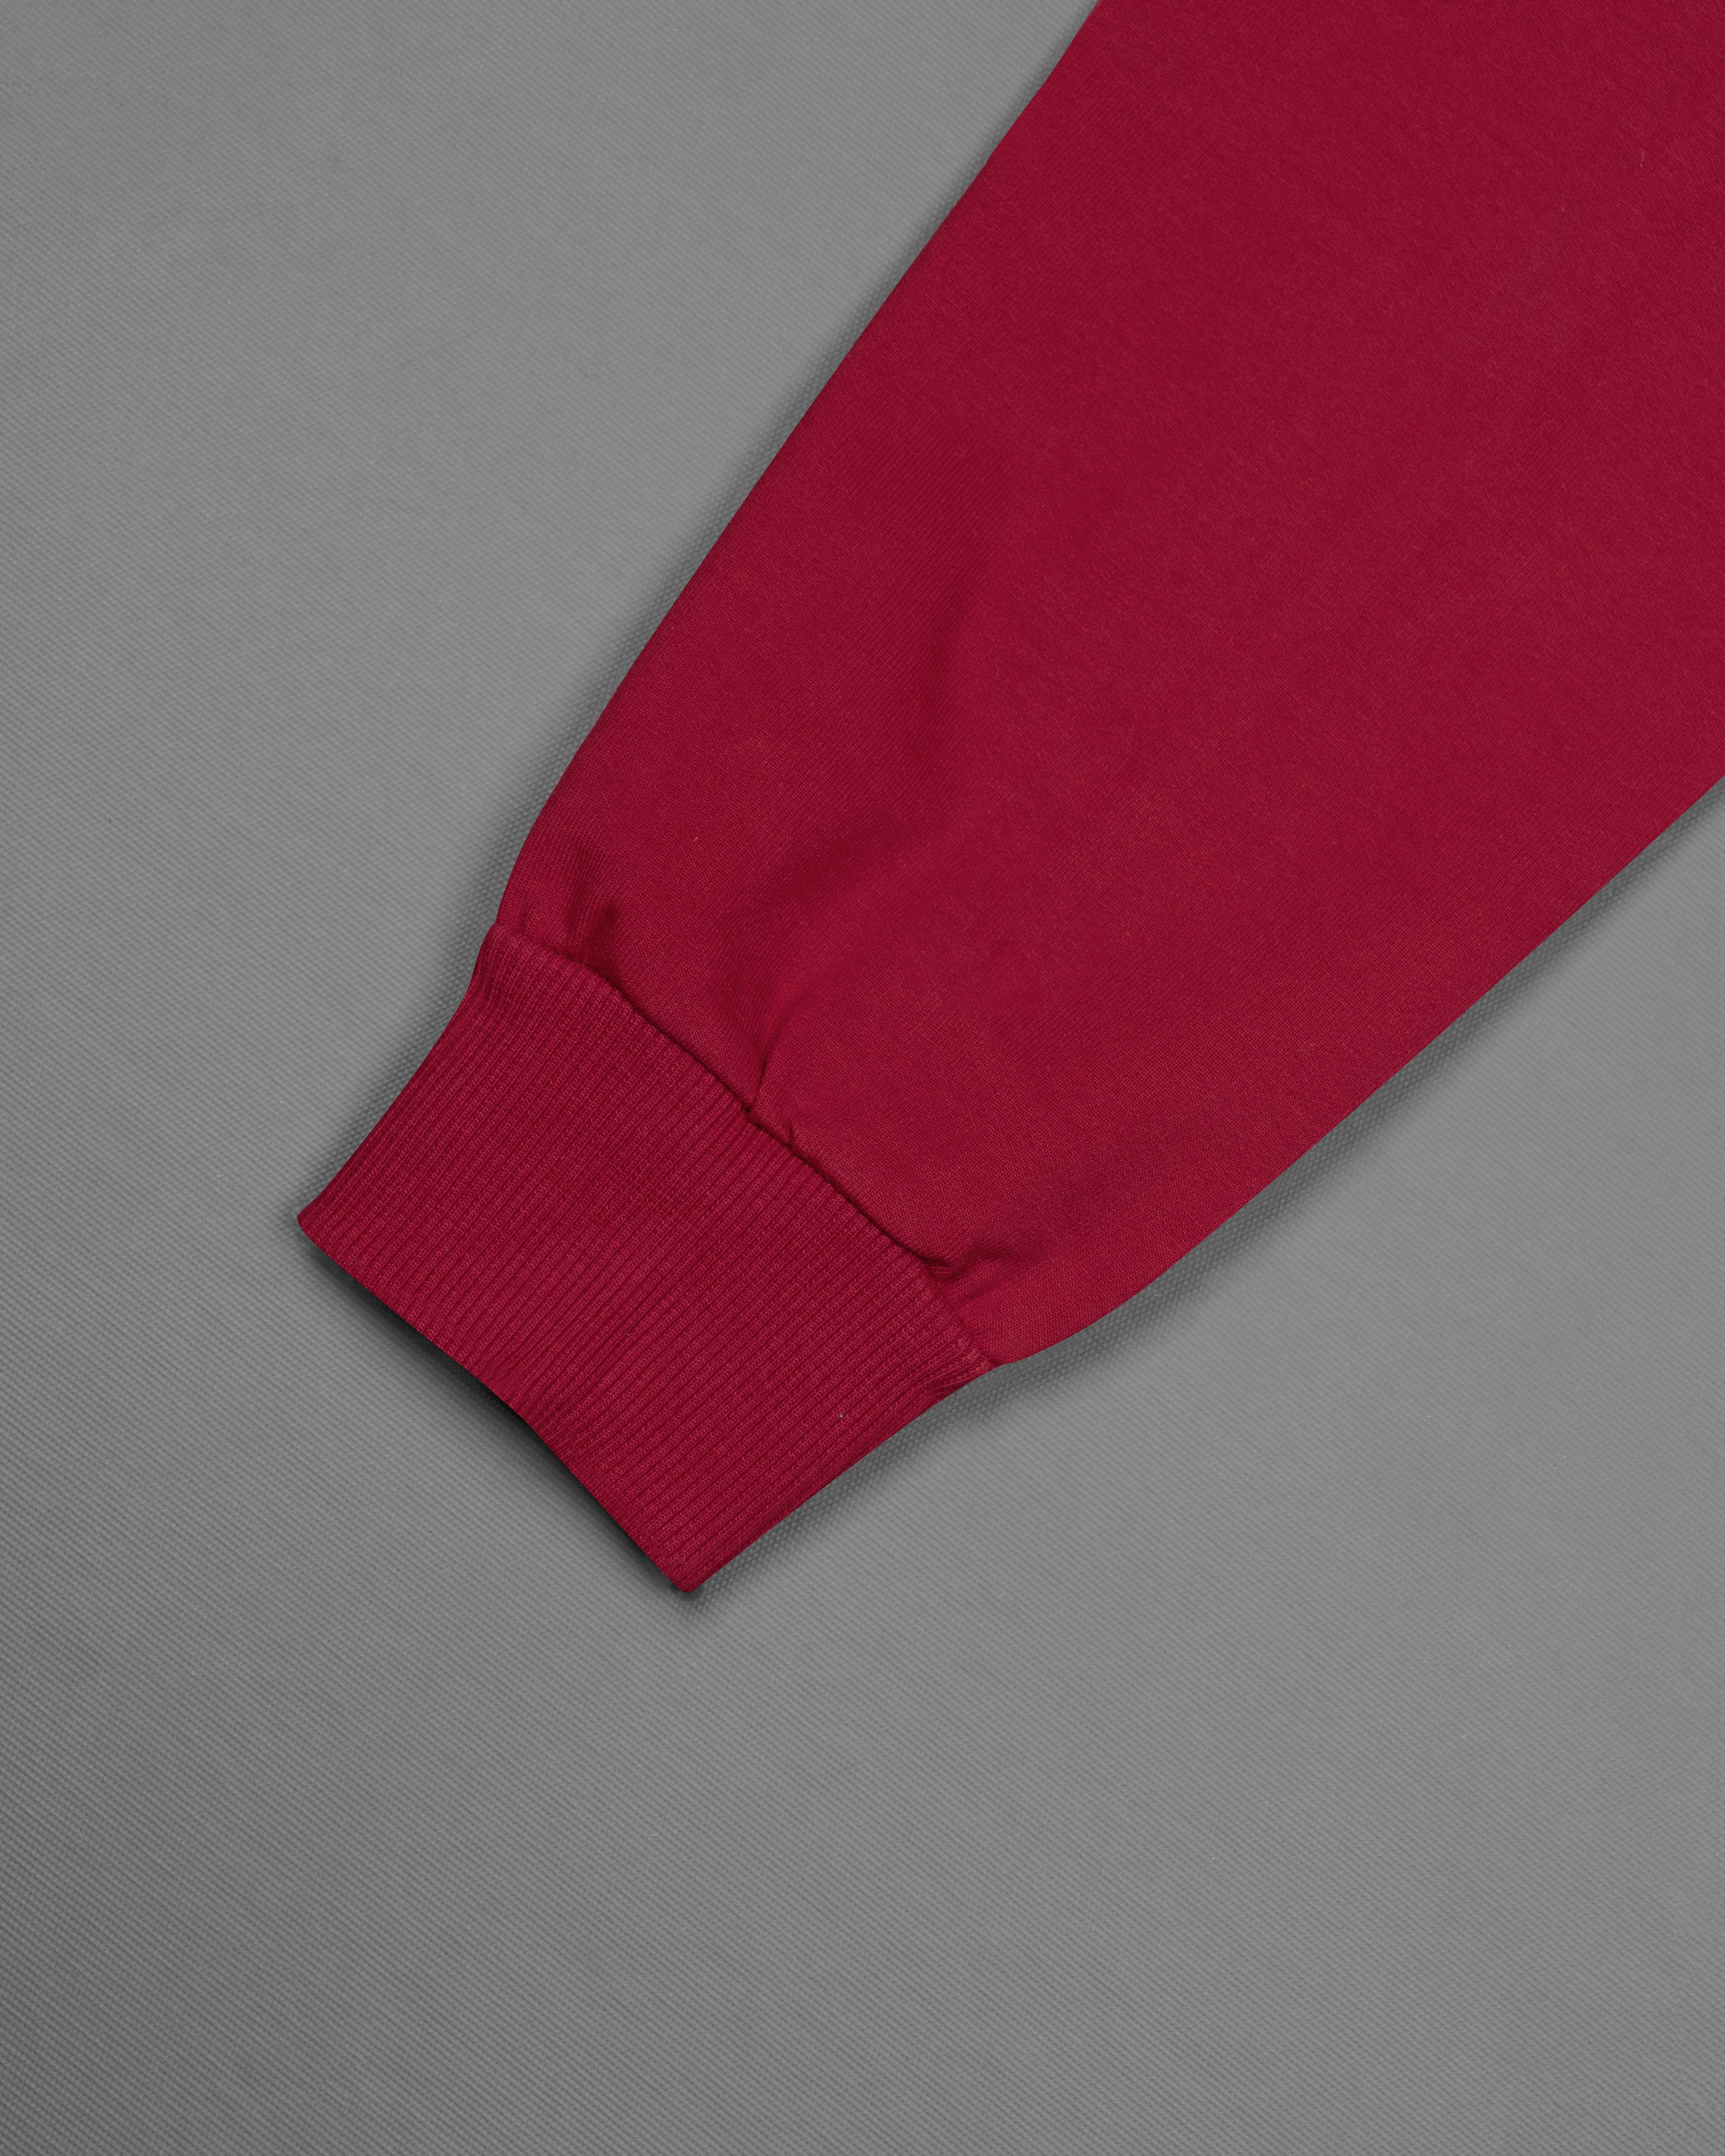 Claret Red Block Pattern Full Sleeve Super Soft Polo SweatshirtTS635-C, TS635-M, TS635-A, TS635-XL, TS635-XXL, TS635-3XL, TS635-4XL